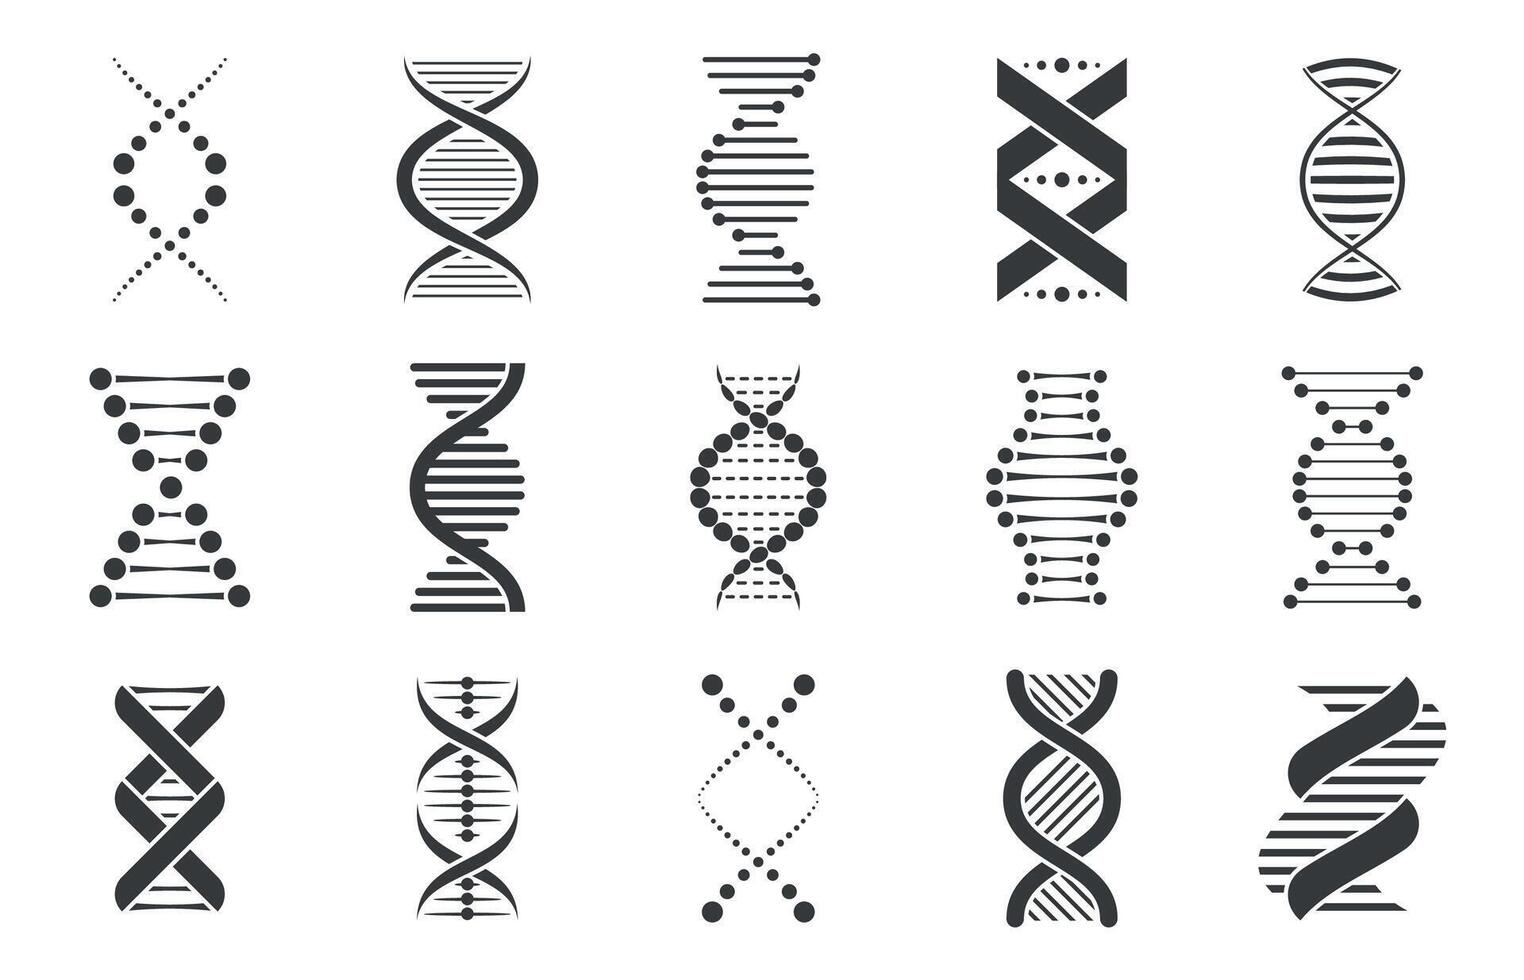 negro adn iconos biotecnología y molecular biología resumen símbolos, espiral genético molécula secuencia código para farmacia y cuidado de la salud. vector conjunto